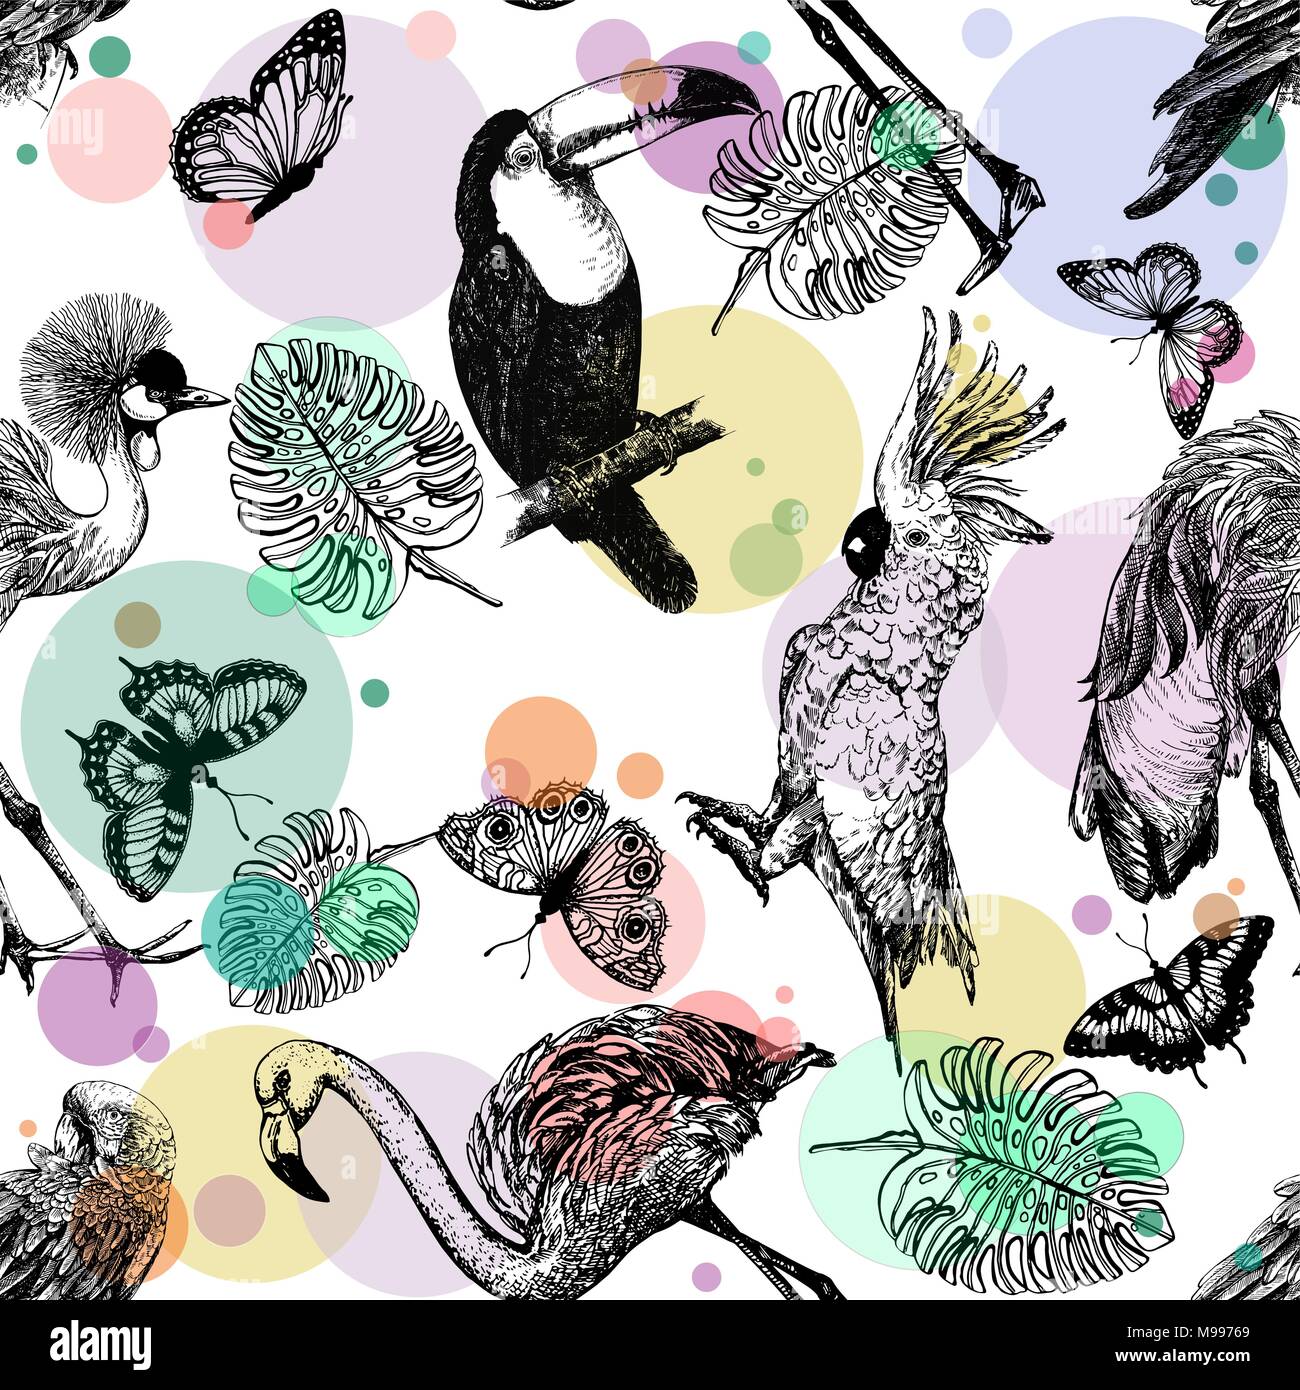 Nahtlose Muster von Hand gezeichnete Skizze Stil exotische Vögel, Pflanzen und Schmetterlinge auf weißem Hintergrund. Vector Illustration. Stock Vektor